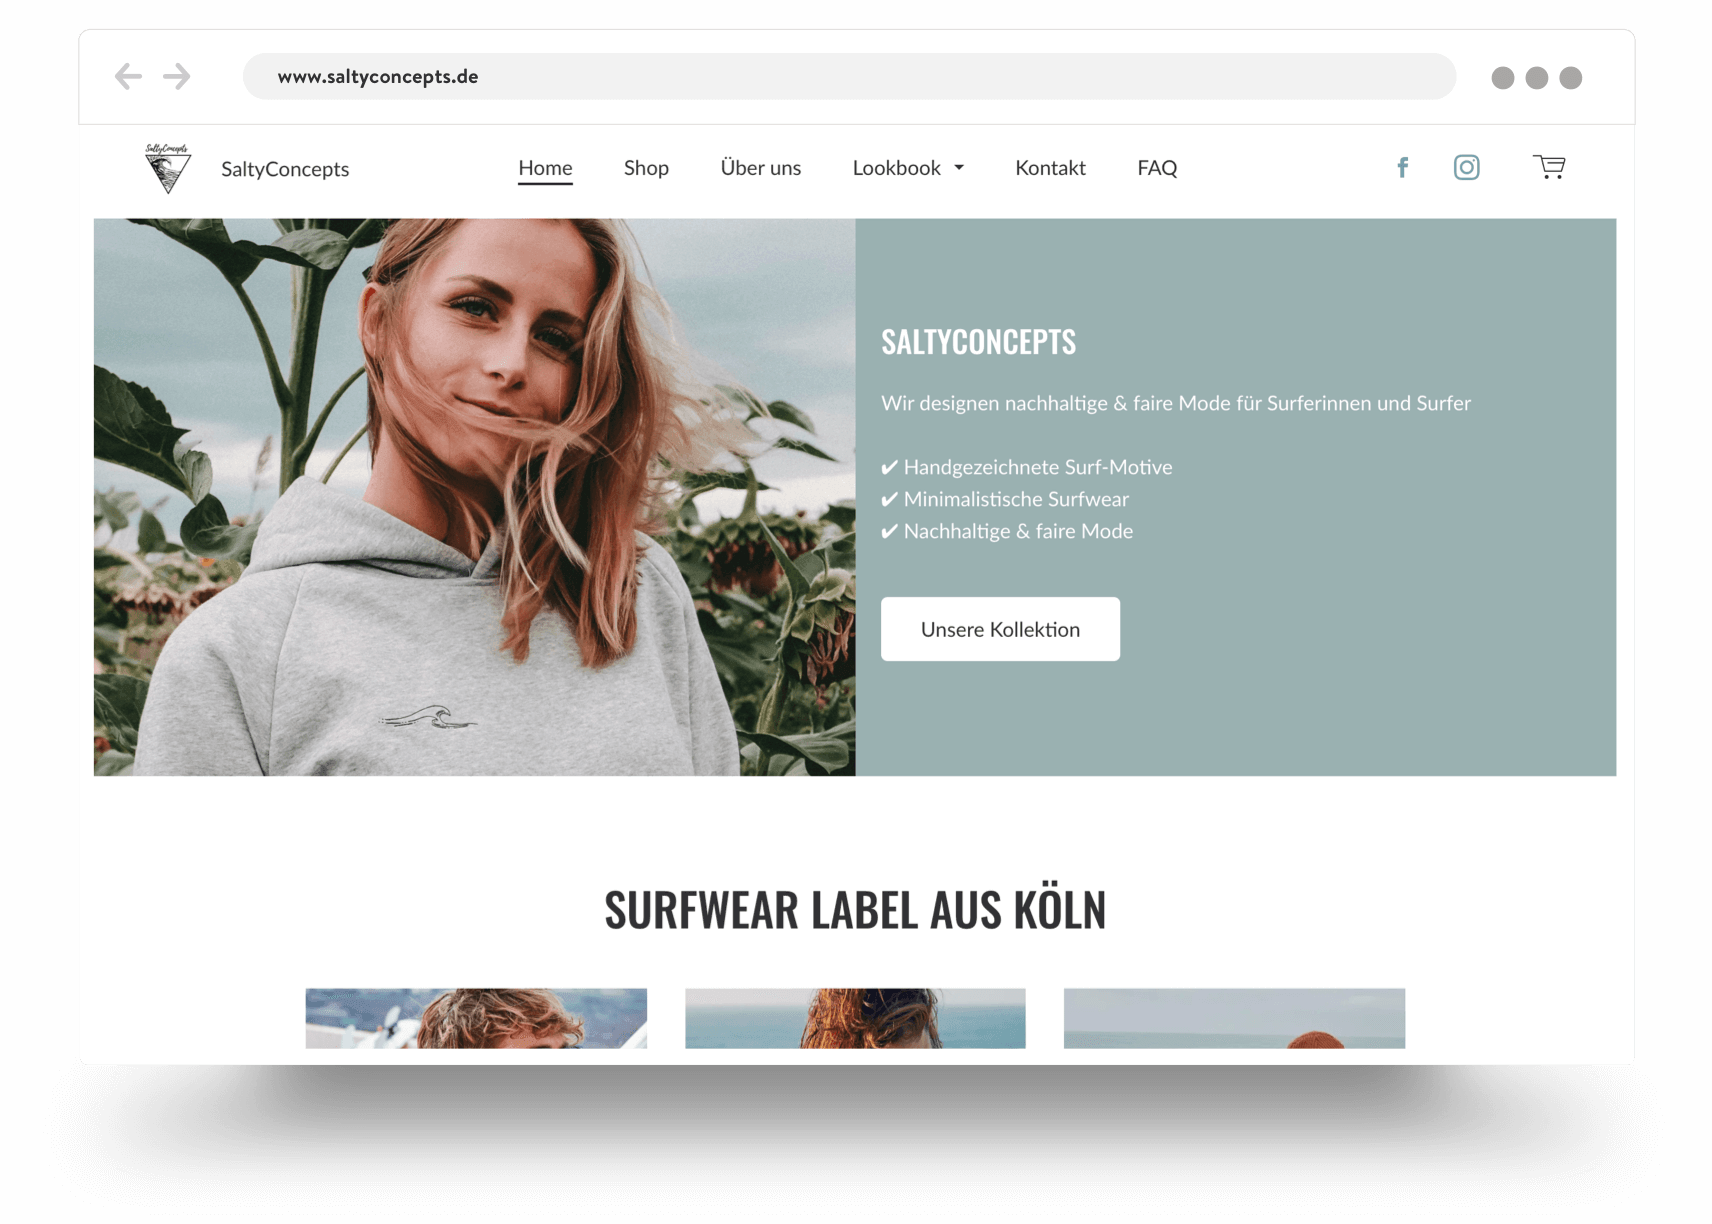 E-boutique vendant des accessoires pour le surf respectueux de l'environnement